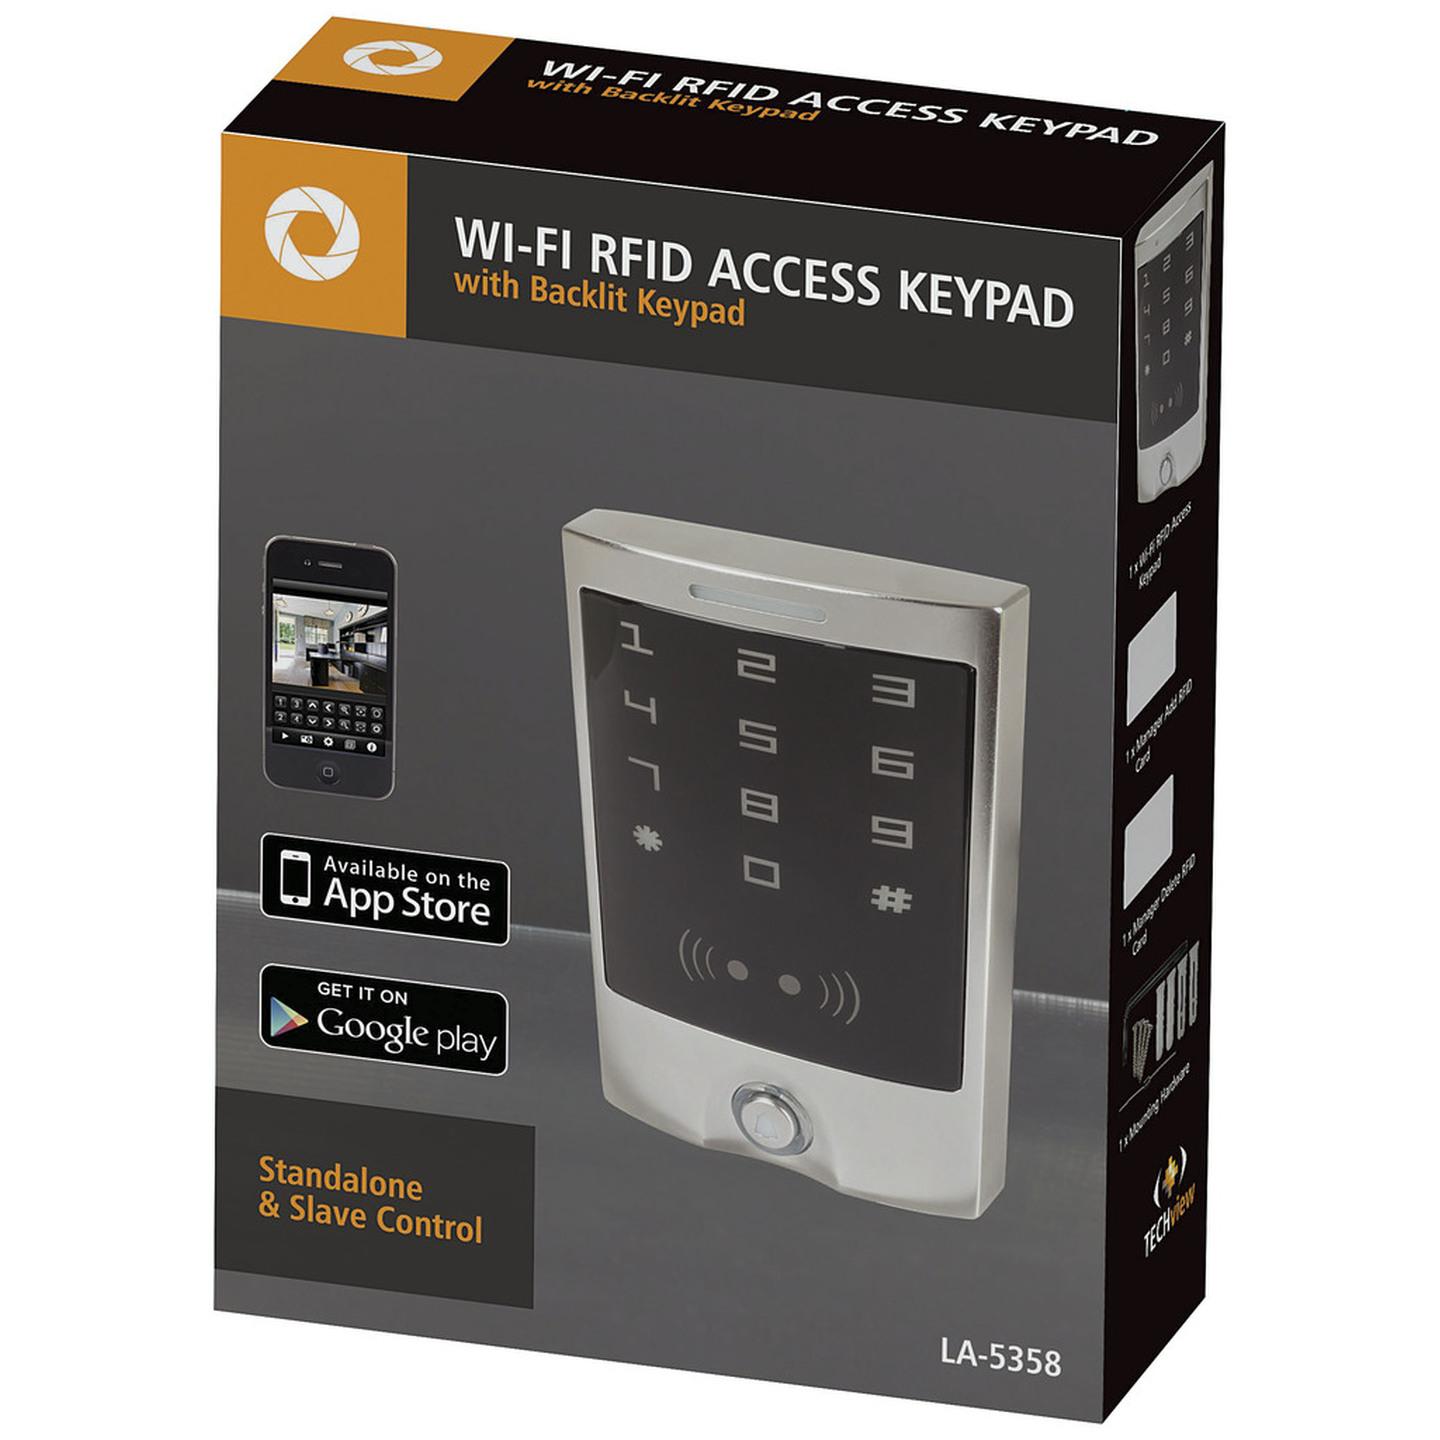 Wi-Fi RFID Access Keypad